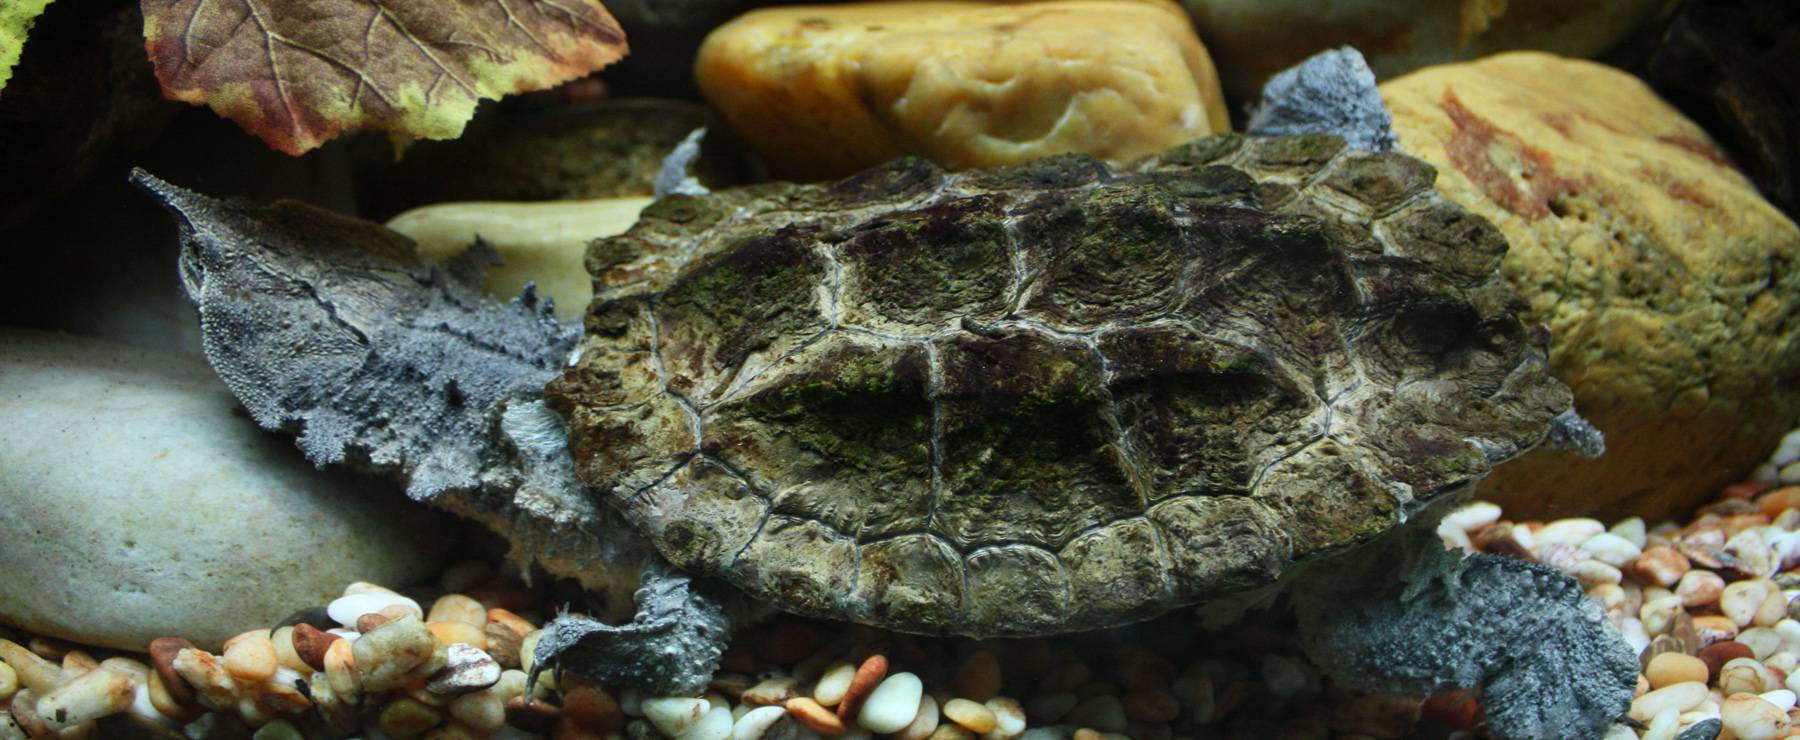 Дальние страны. часть 21. удивительные черепахи (округ маровийн, суринам)